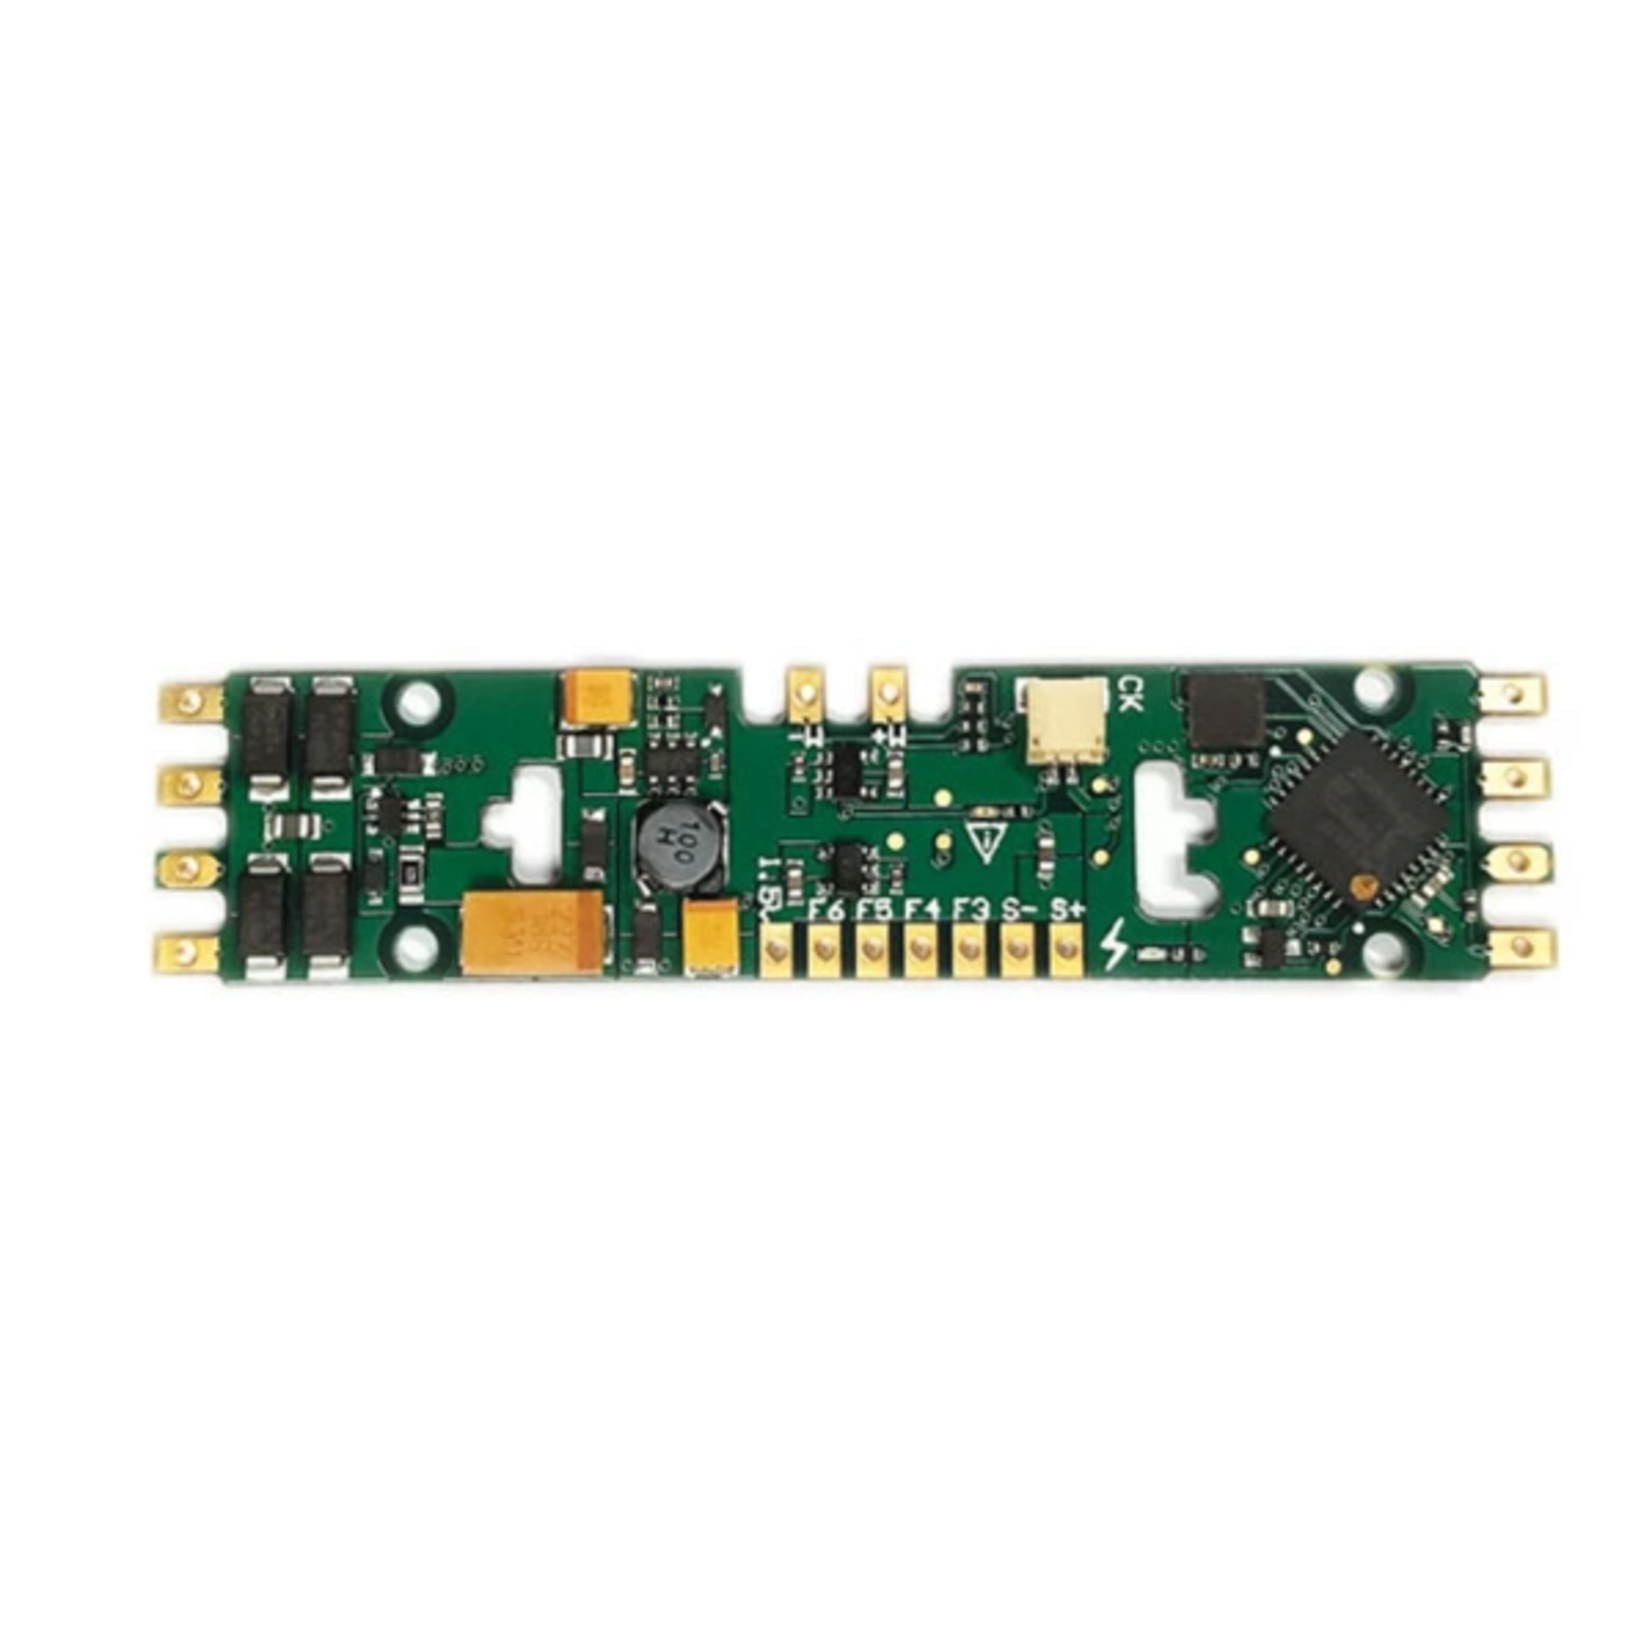 Soundtraxx TSU-PNP-2 EMD 2 amp sound decoder board